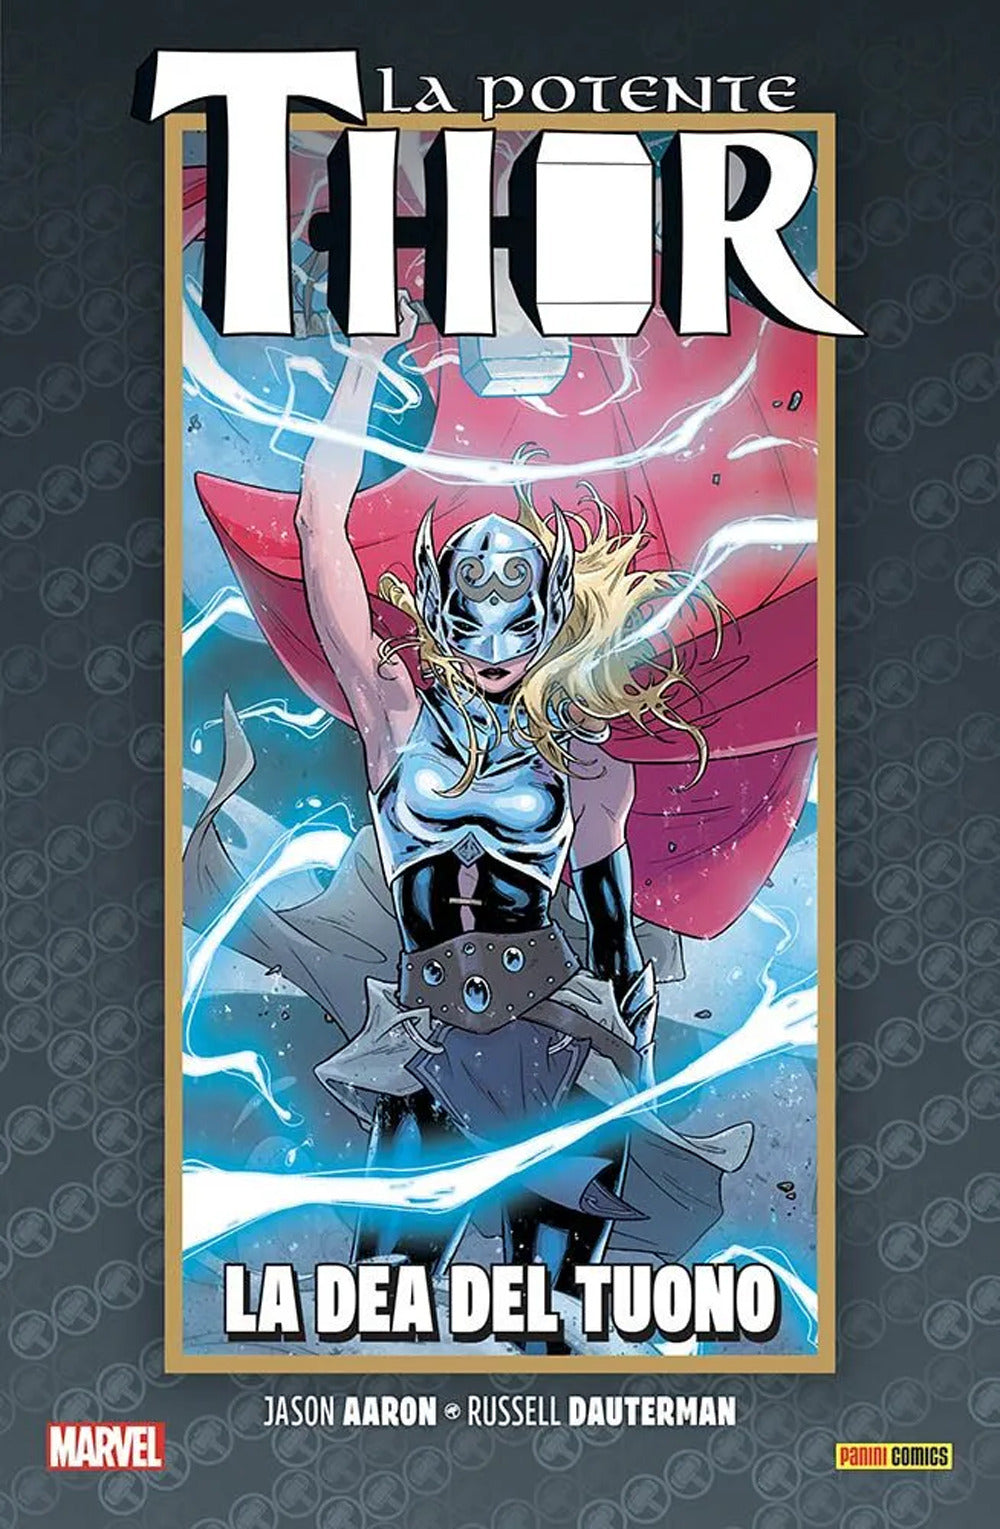 La vita e la morte della potente Thor. Vol. 1: La dea del tuono.